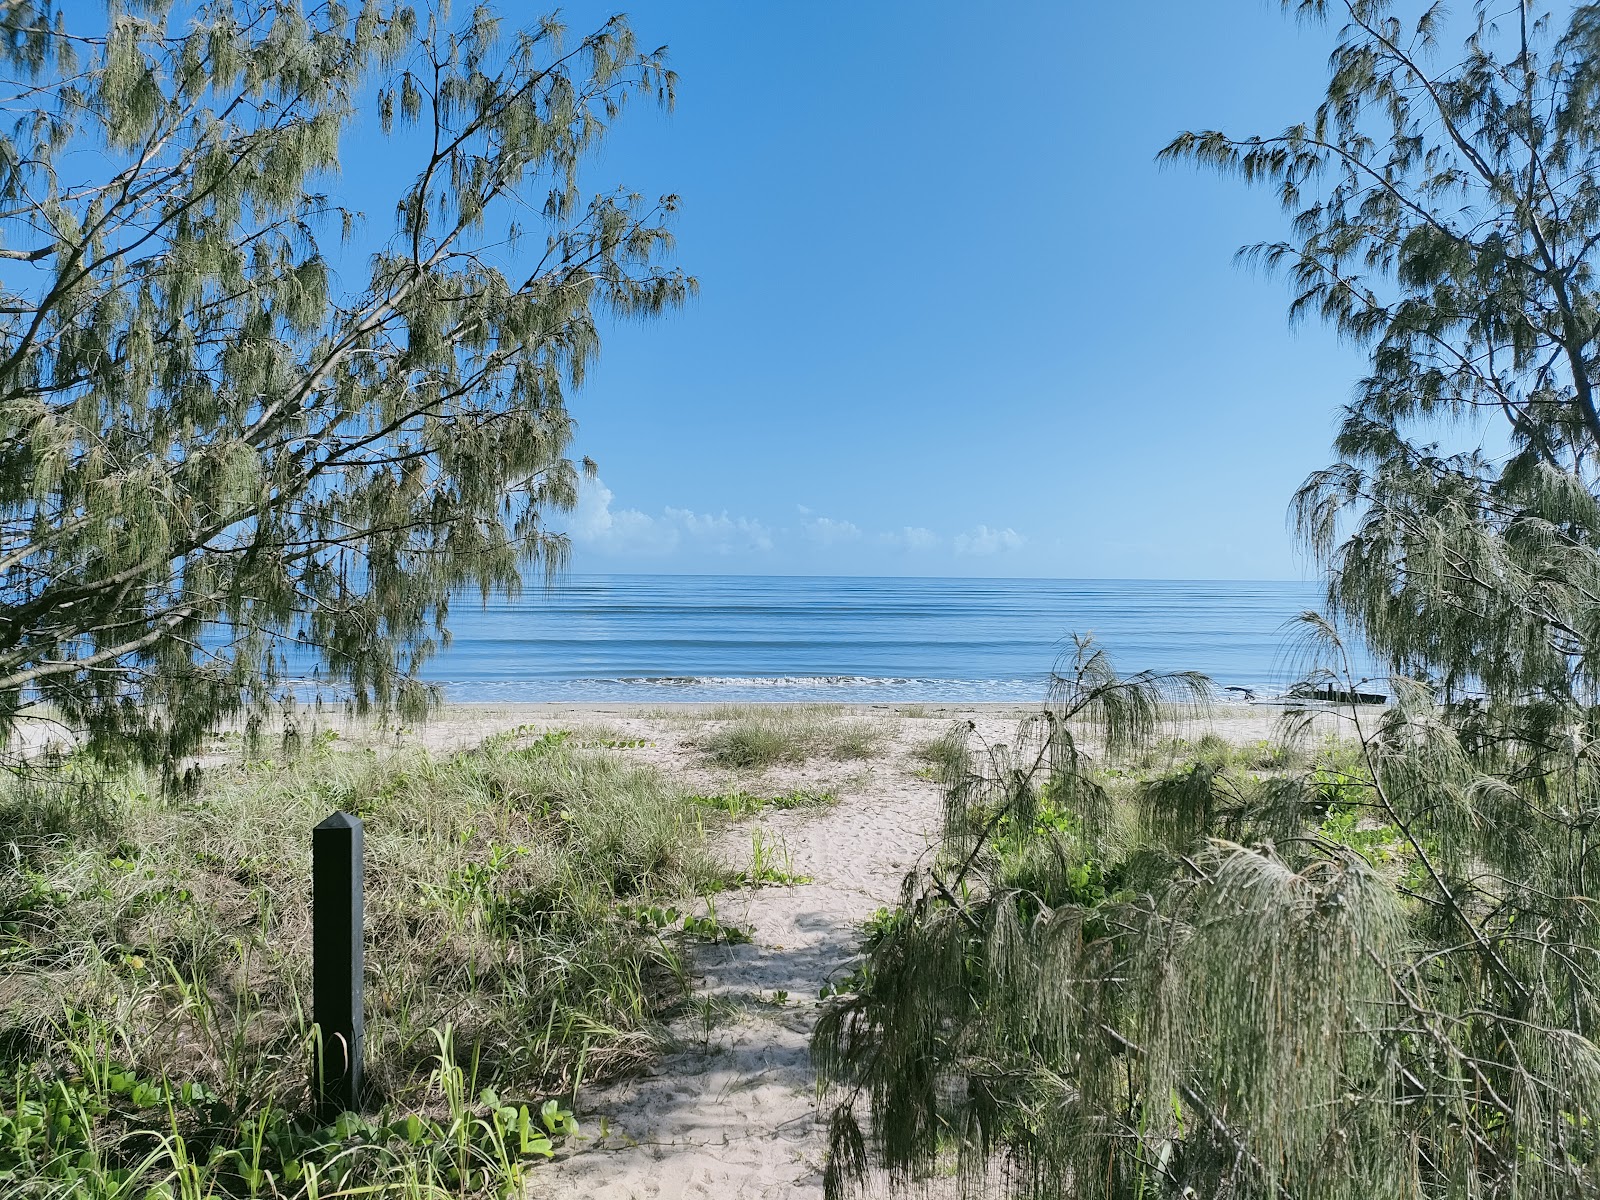 Fotografie cu Toogoom 04 Beach - locul popular printre cunoscătorii de relaxare